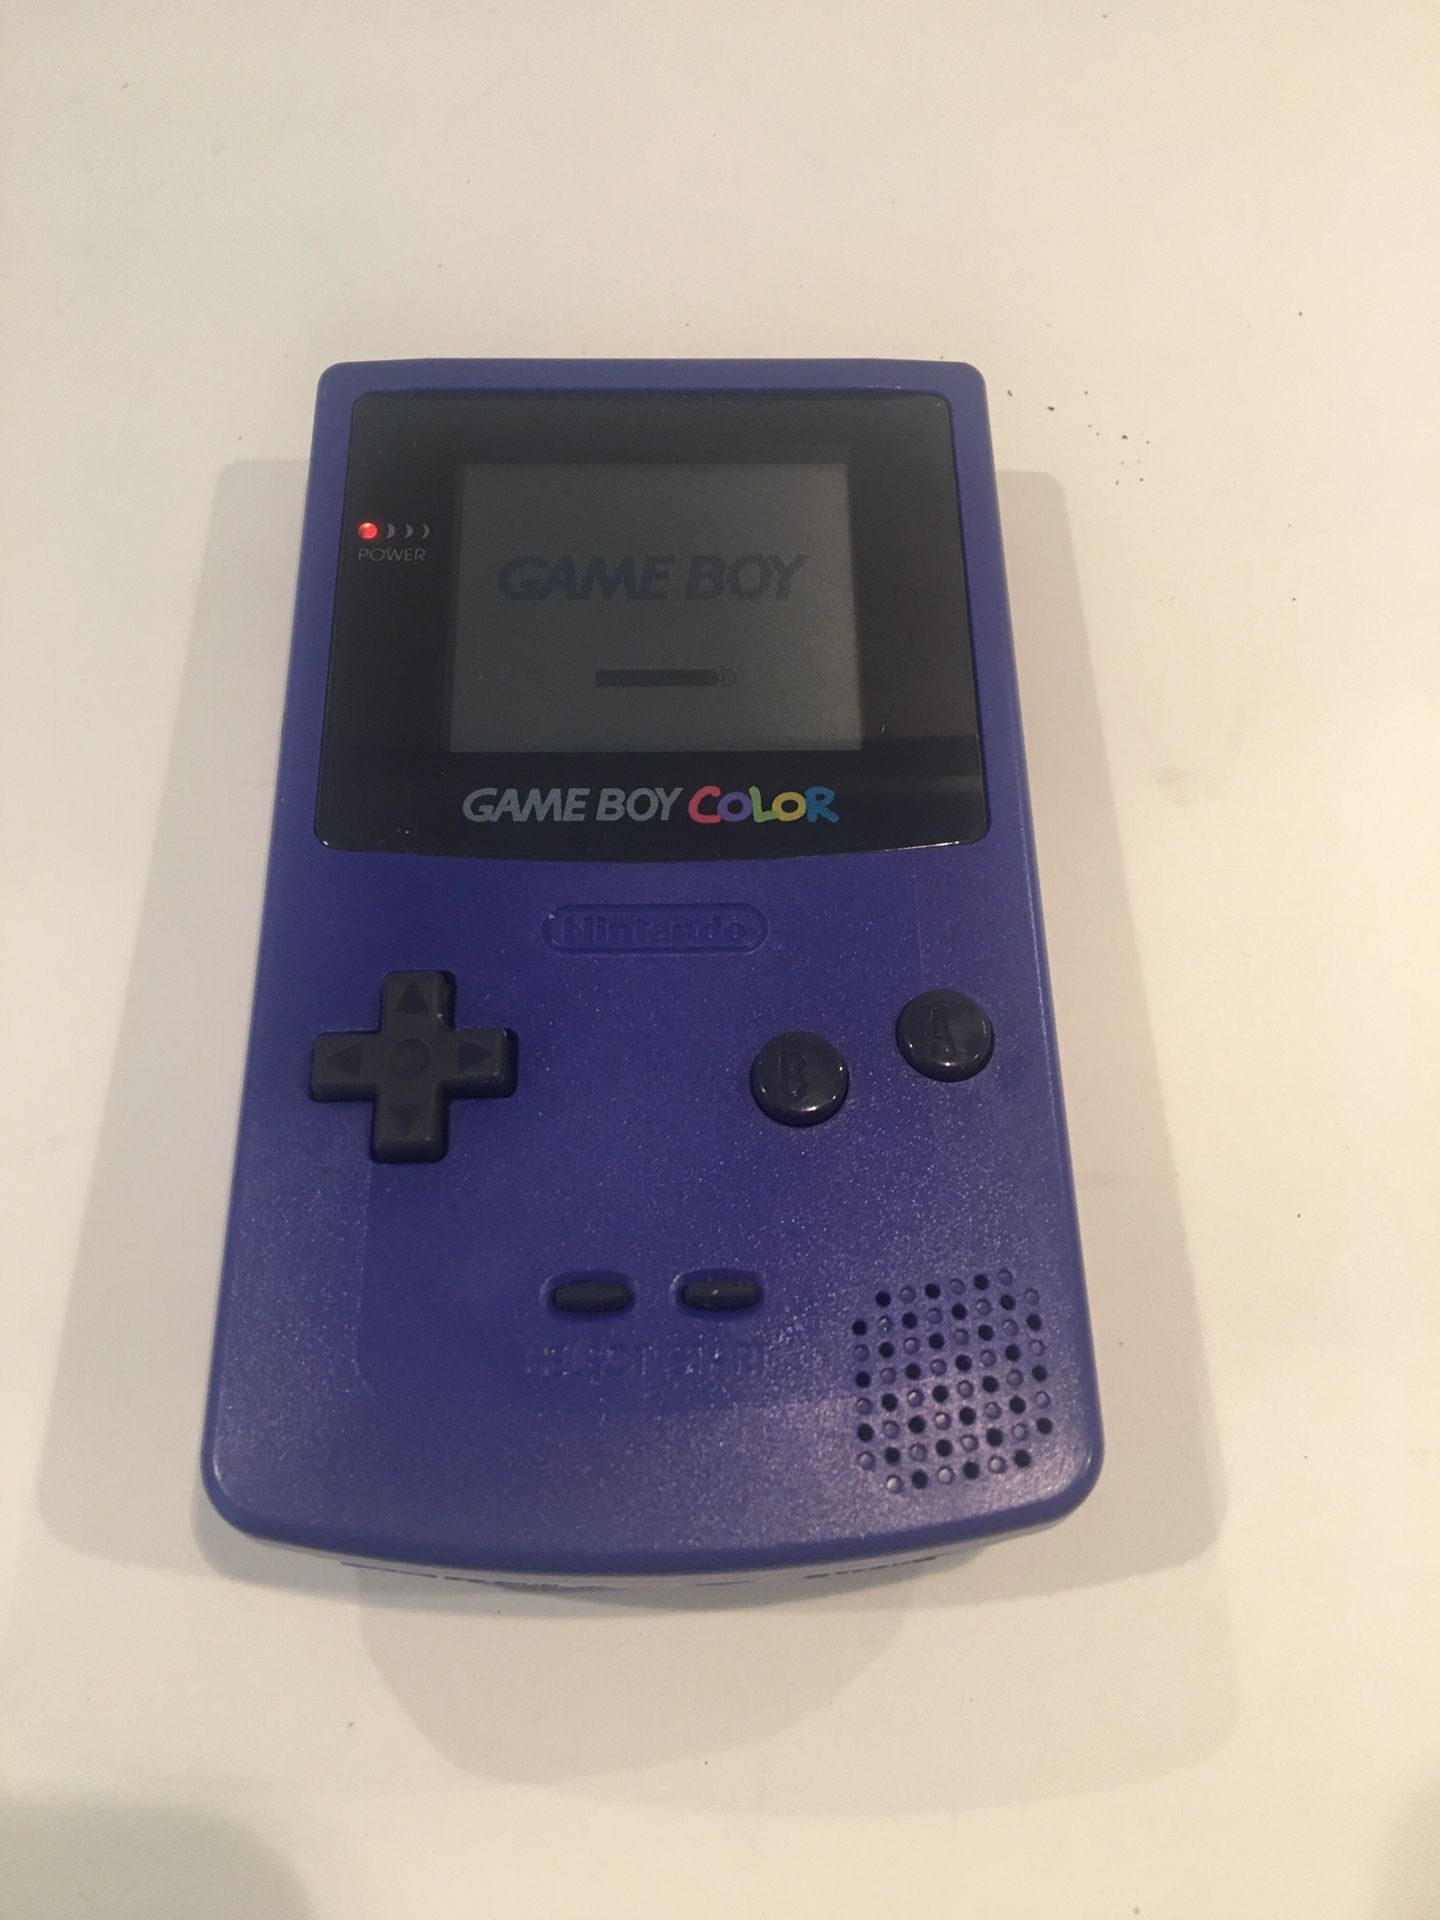 Nintendo GameBoy Color in purple